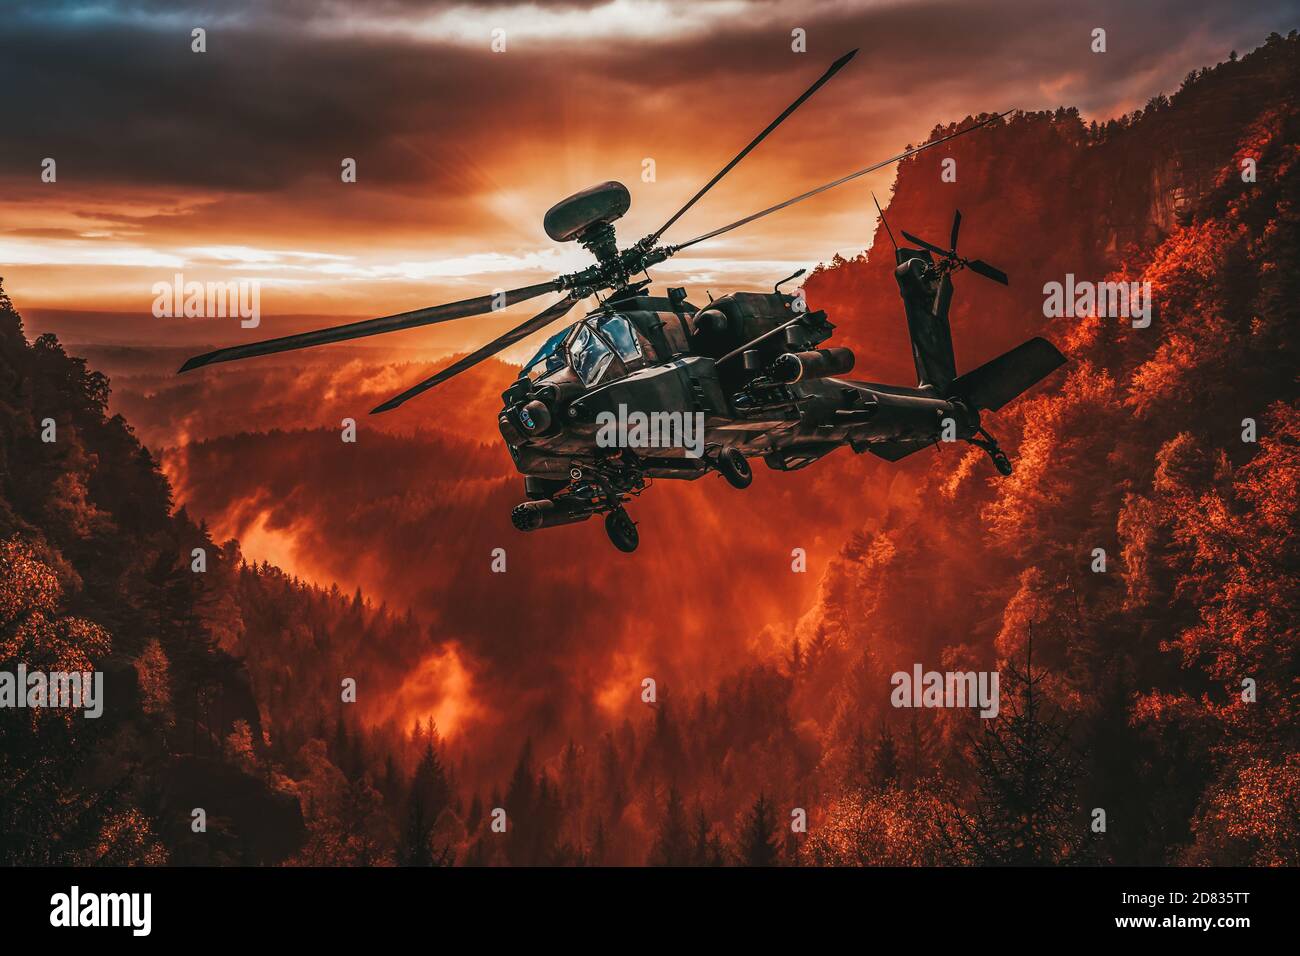 L'hélicoptère American Attack survole un paysage magnifique Banque D'Images